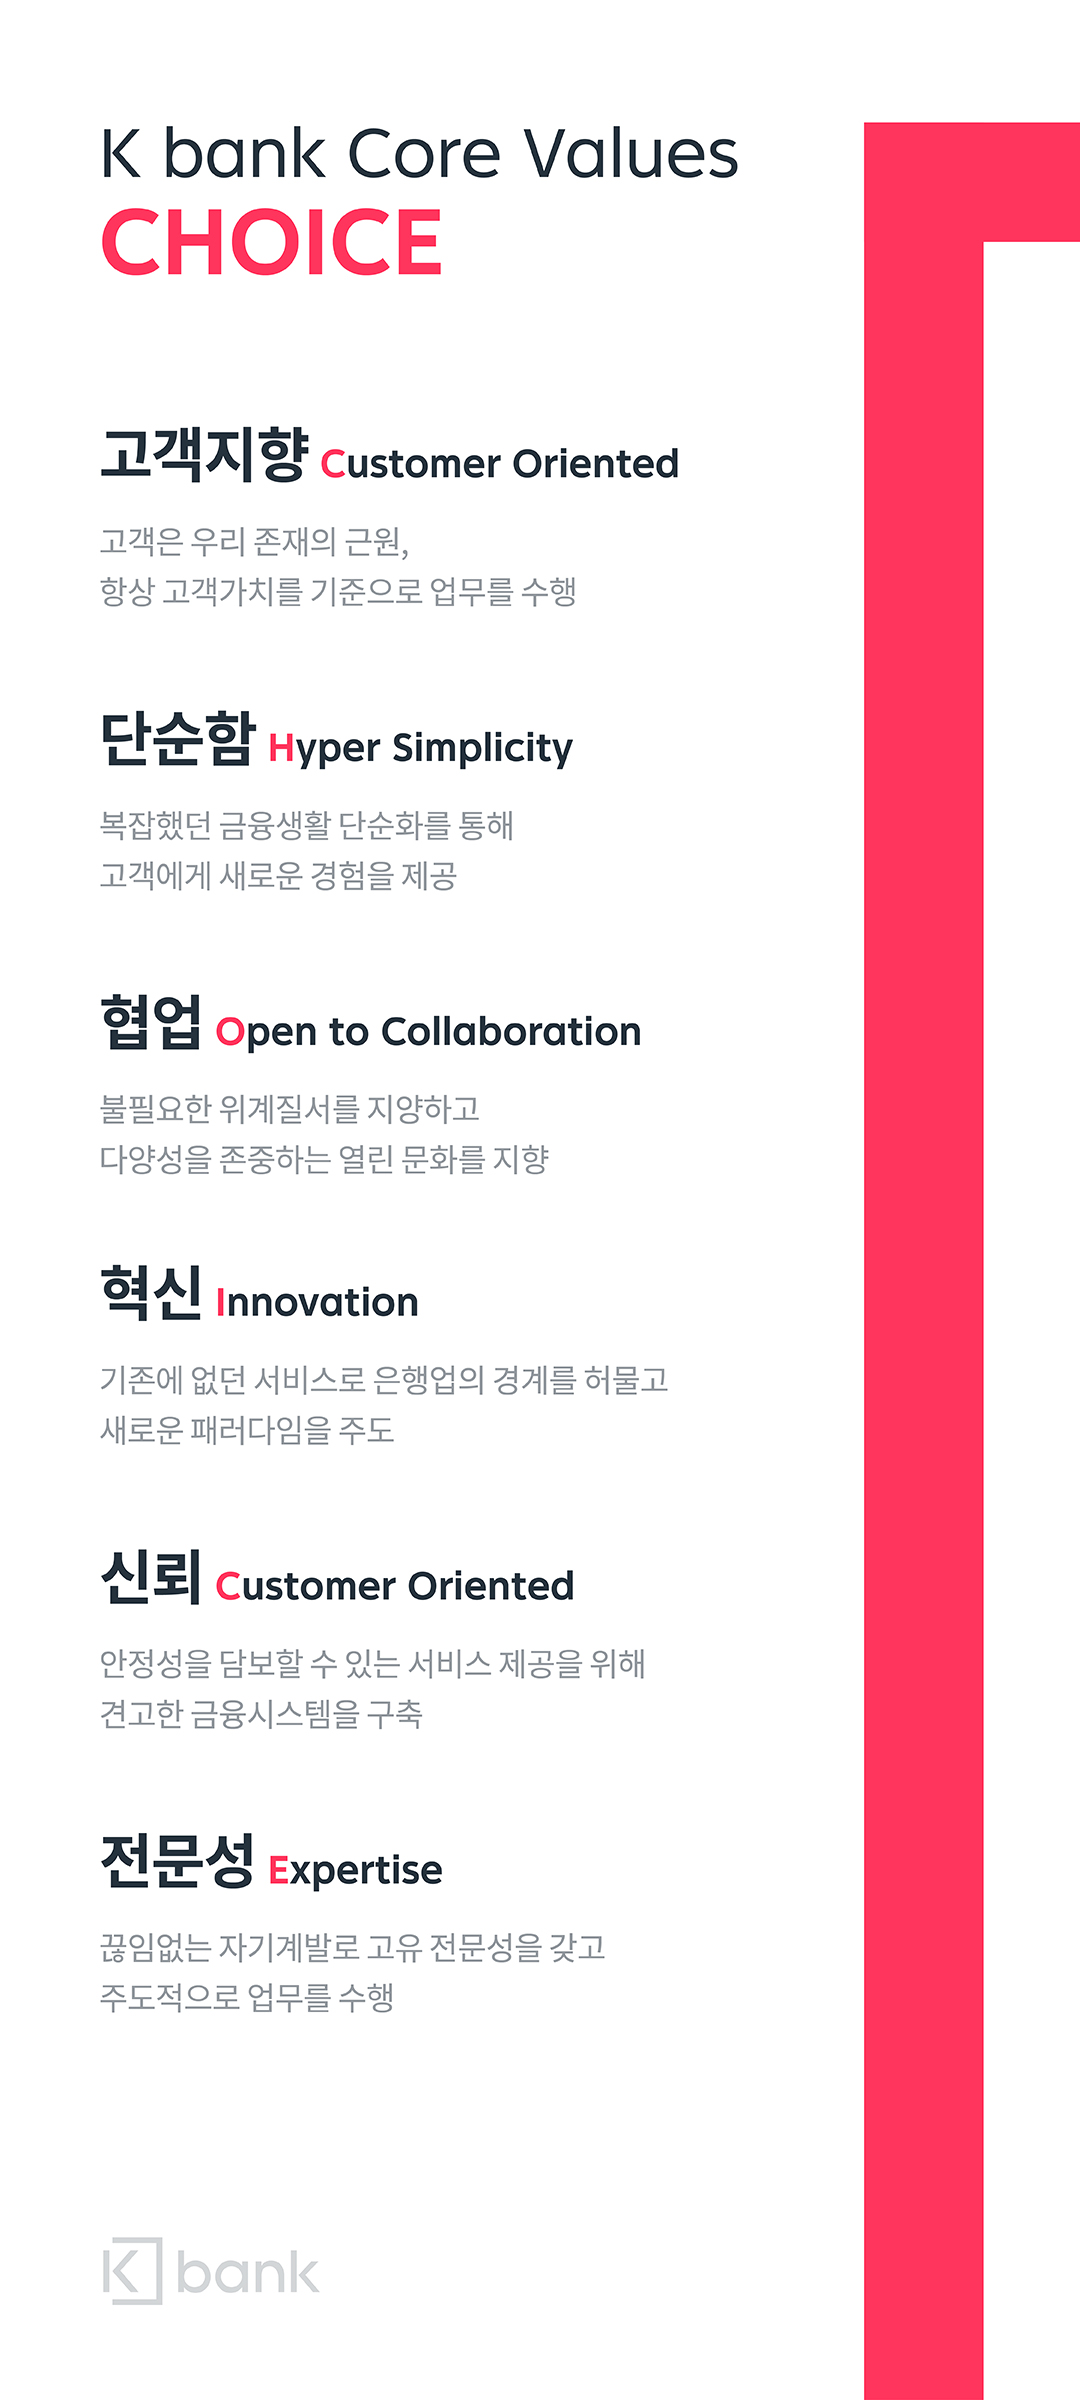 케이뱅크 핵심가치 - 고객지향 Customer Oriented, 개방성 Openness, 혁신 Innovation, 단순함 Hyper Simplicity, 신뢰 Credibility, 전문성 Expertise